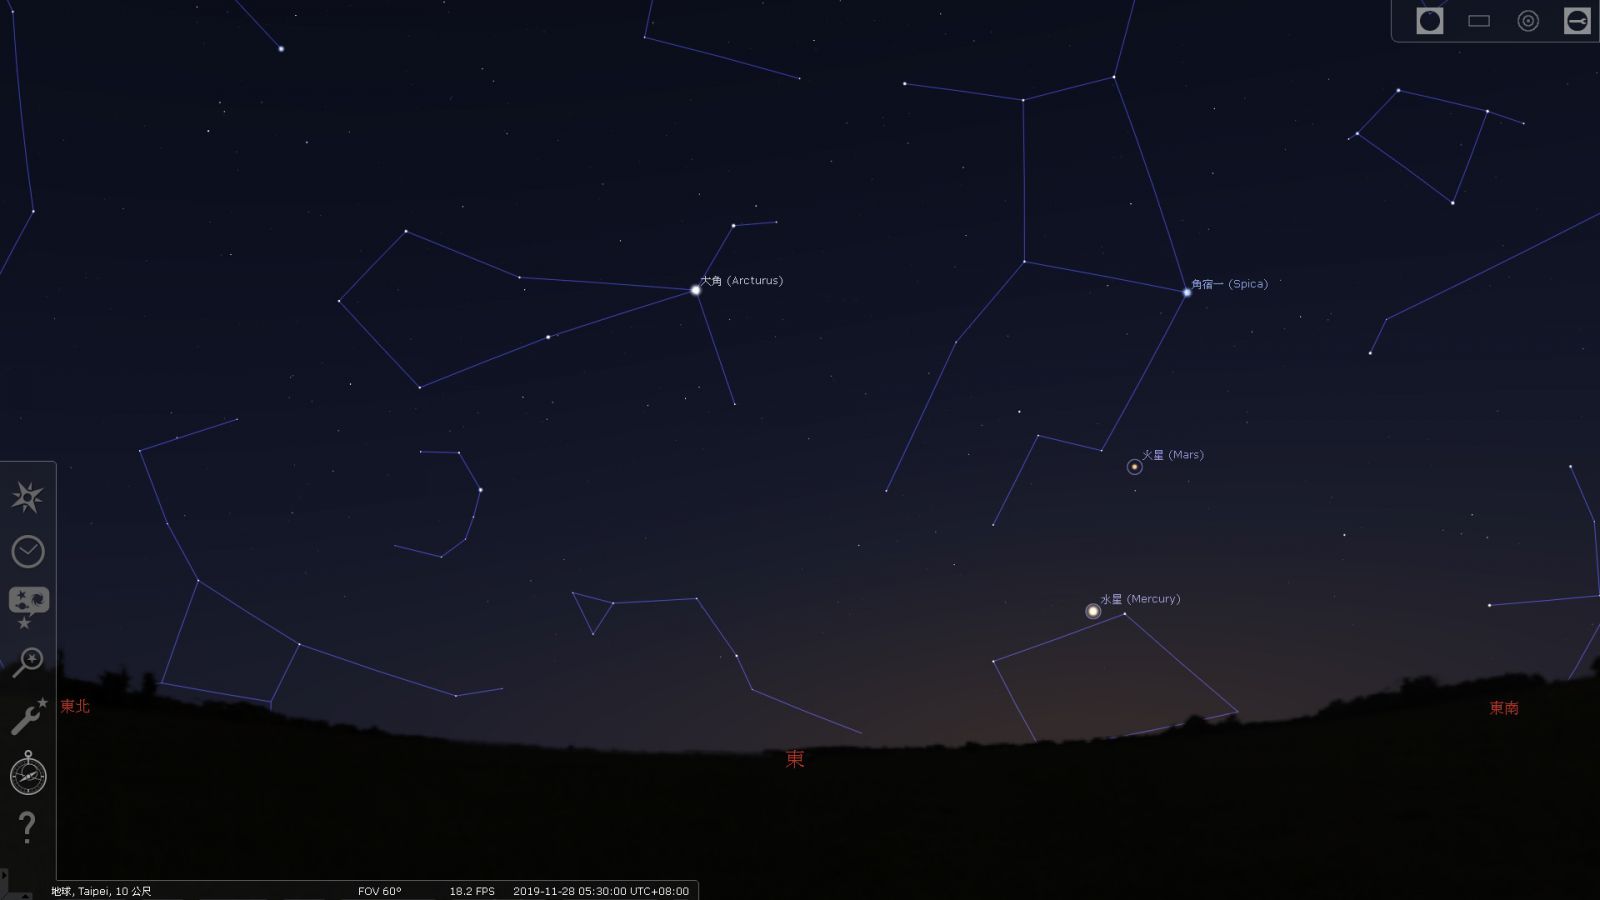 2019/11/28凌晨5:30水星西大距时所在位置示意图。